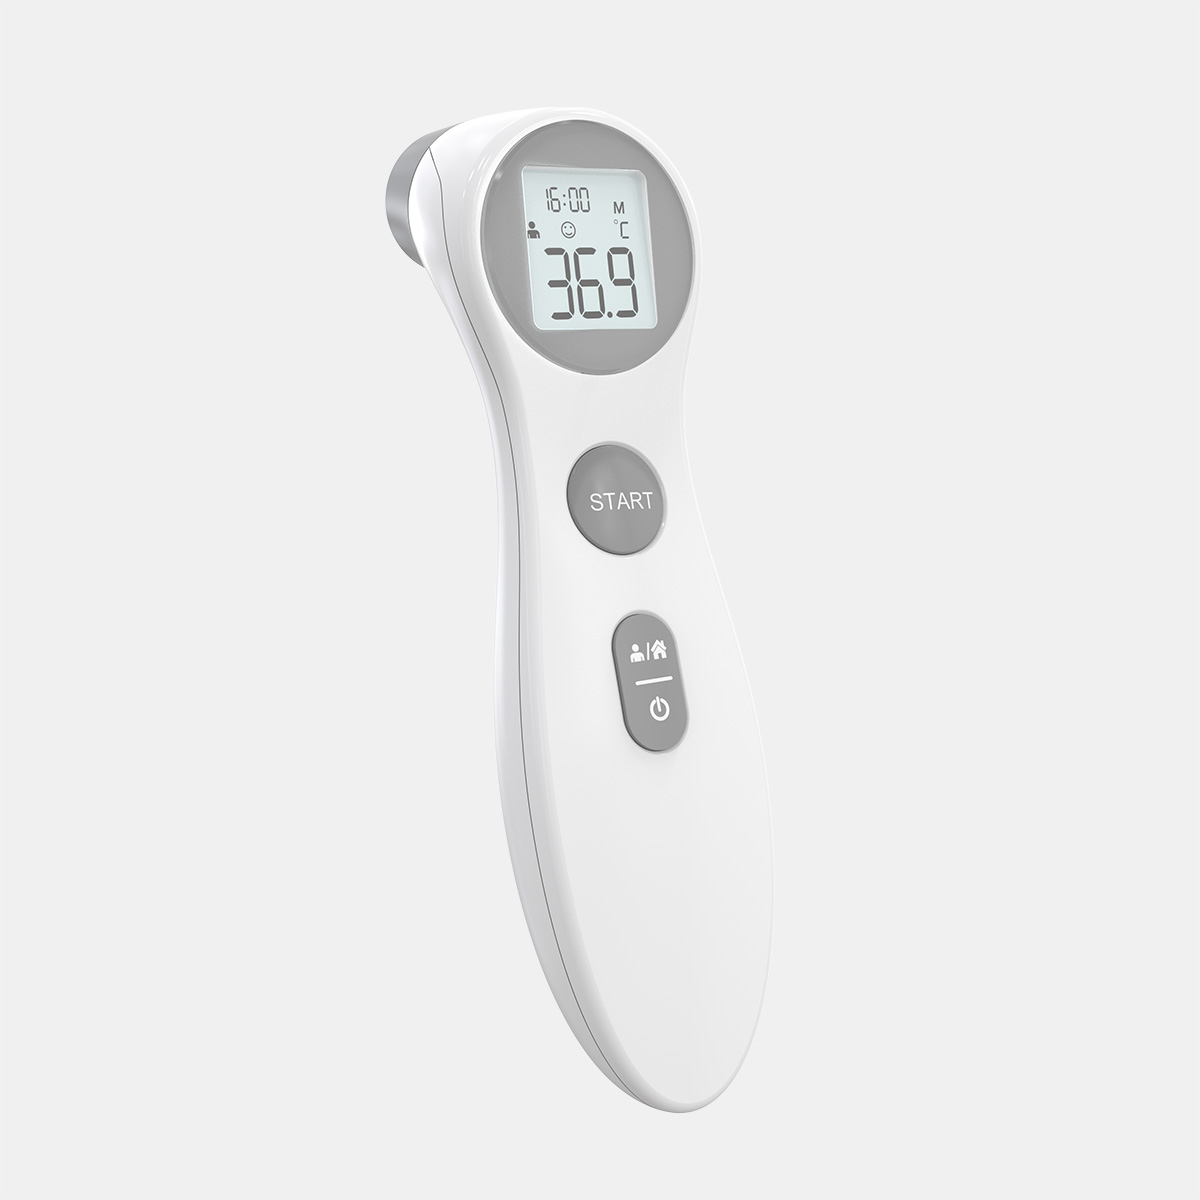 Inaprubahan ng CE MDR ang Non Contact Infrared Forehead Thermometer Gun Medikal para sa Lagnat